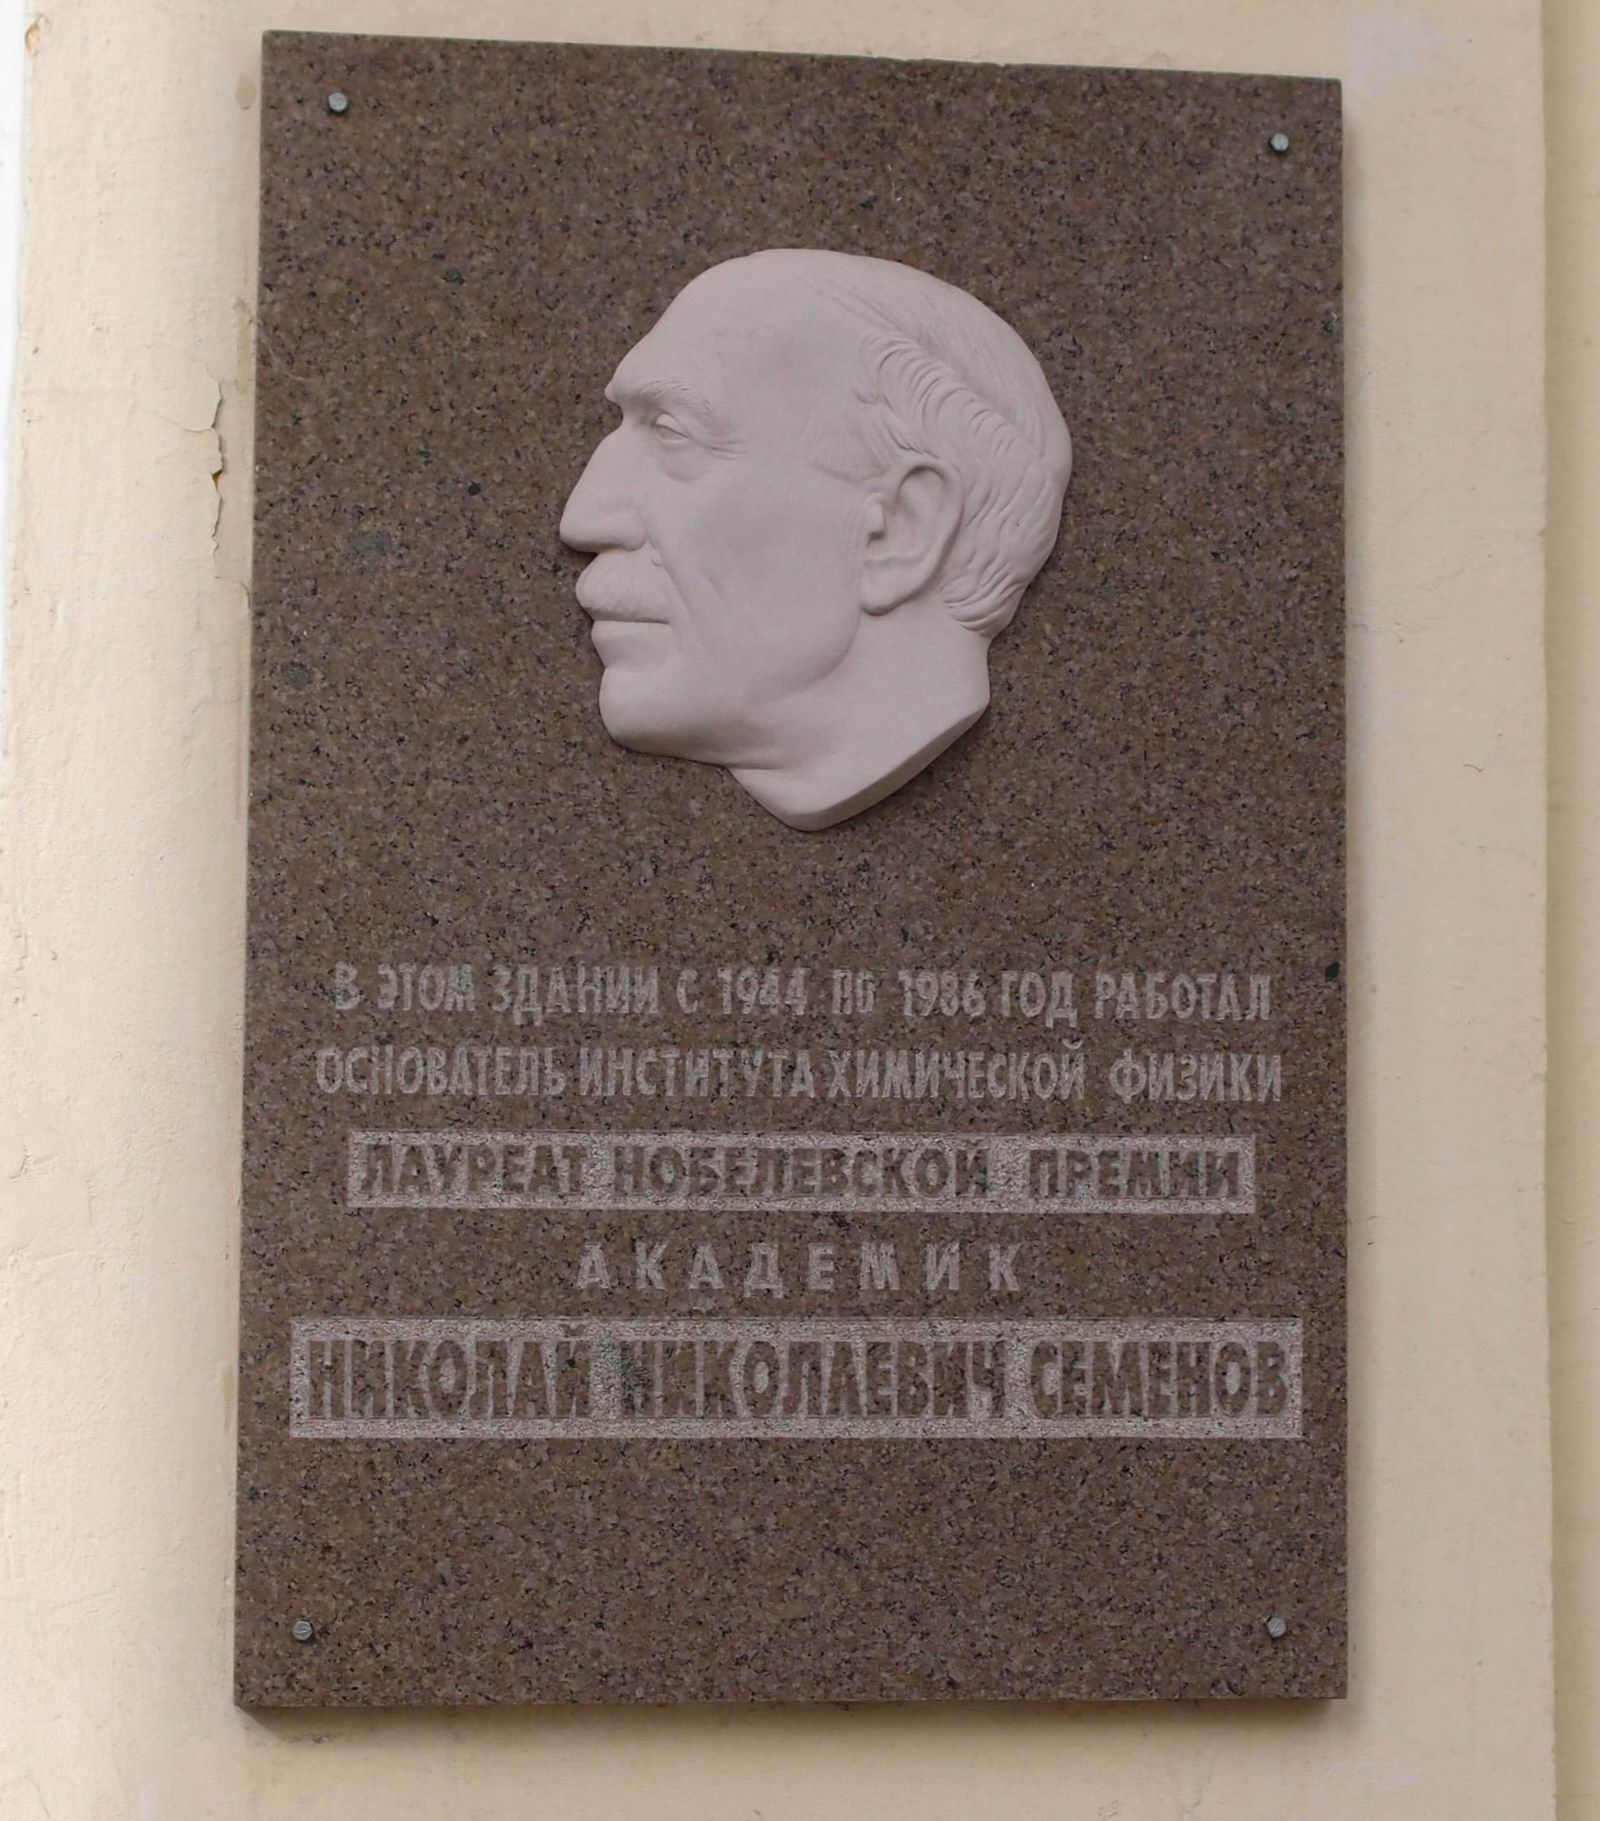 Мемориальная доска Семёнову Н.Н. (1896–1986), на улице Косыгина, дом 4, корпус 1, открыта в 2001.